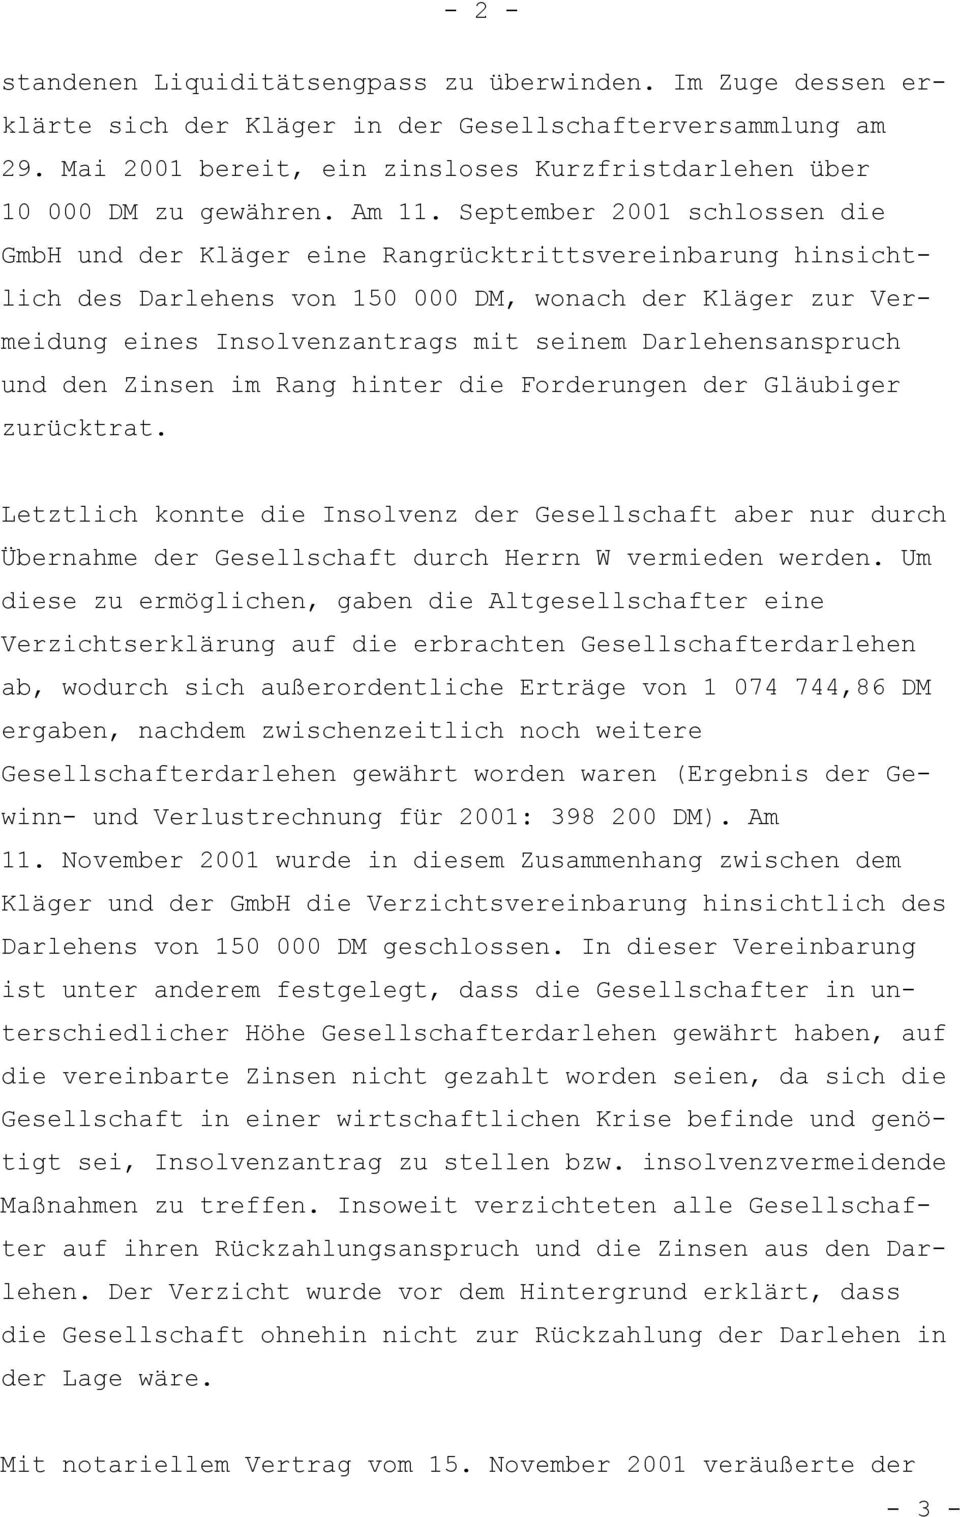 September 2001 schlossen die GmbH und der Kläger eine Rangrücktrittsvereinbarung hinsichtlich des Darlehens von 150 000 DM, wonach der Kläger zur Vermeidung eines Insolvenzantrags mit seinem